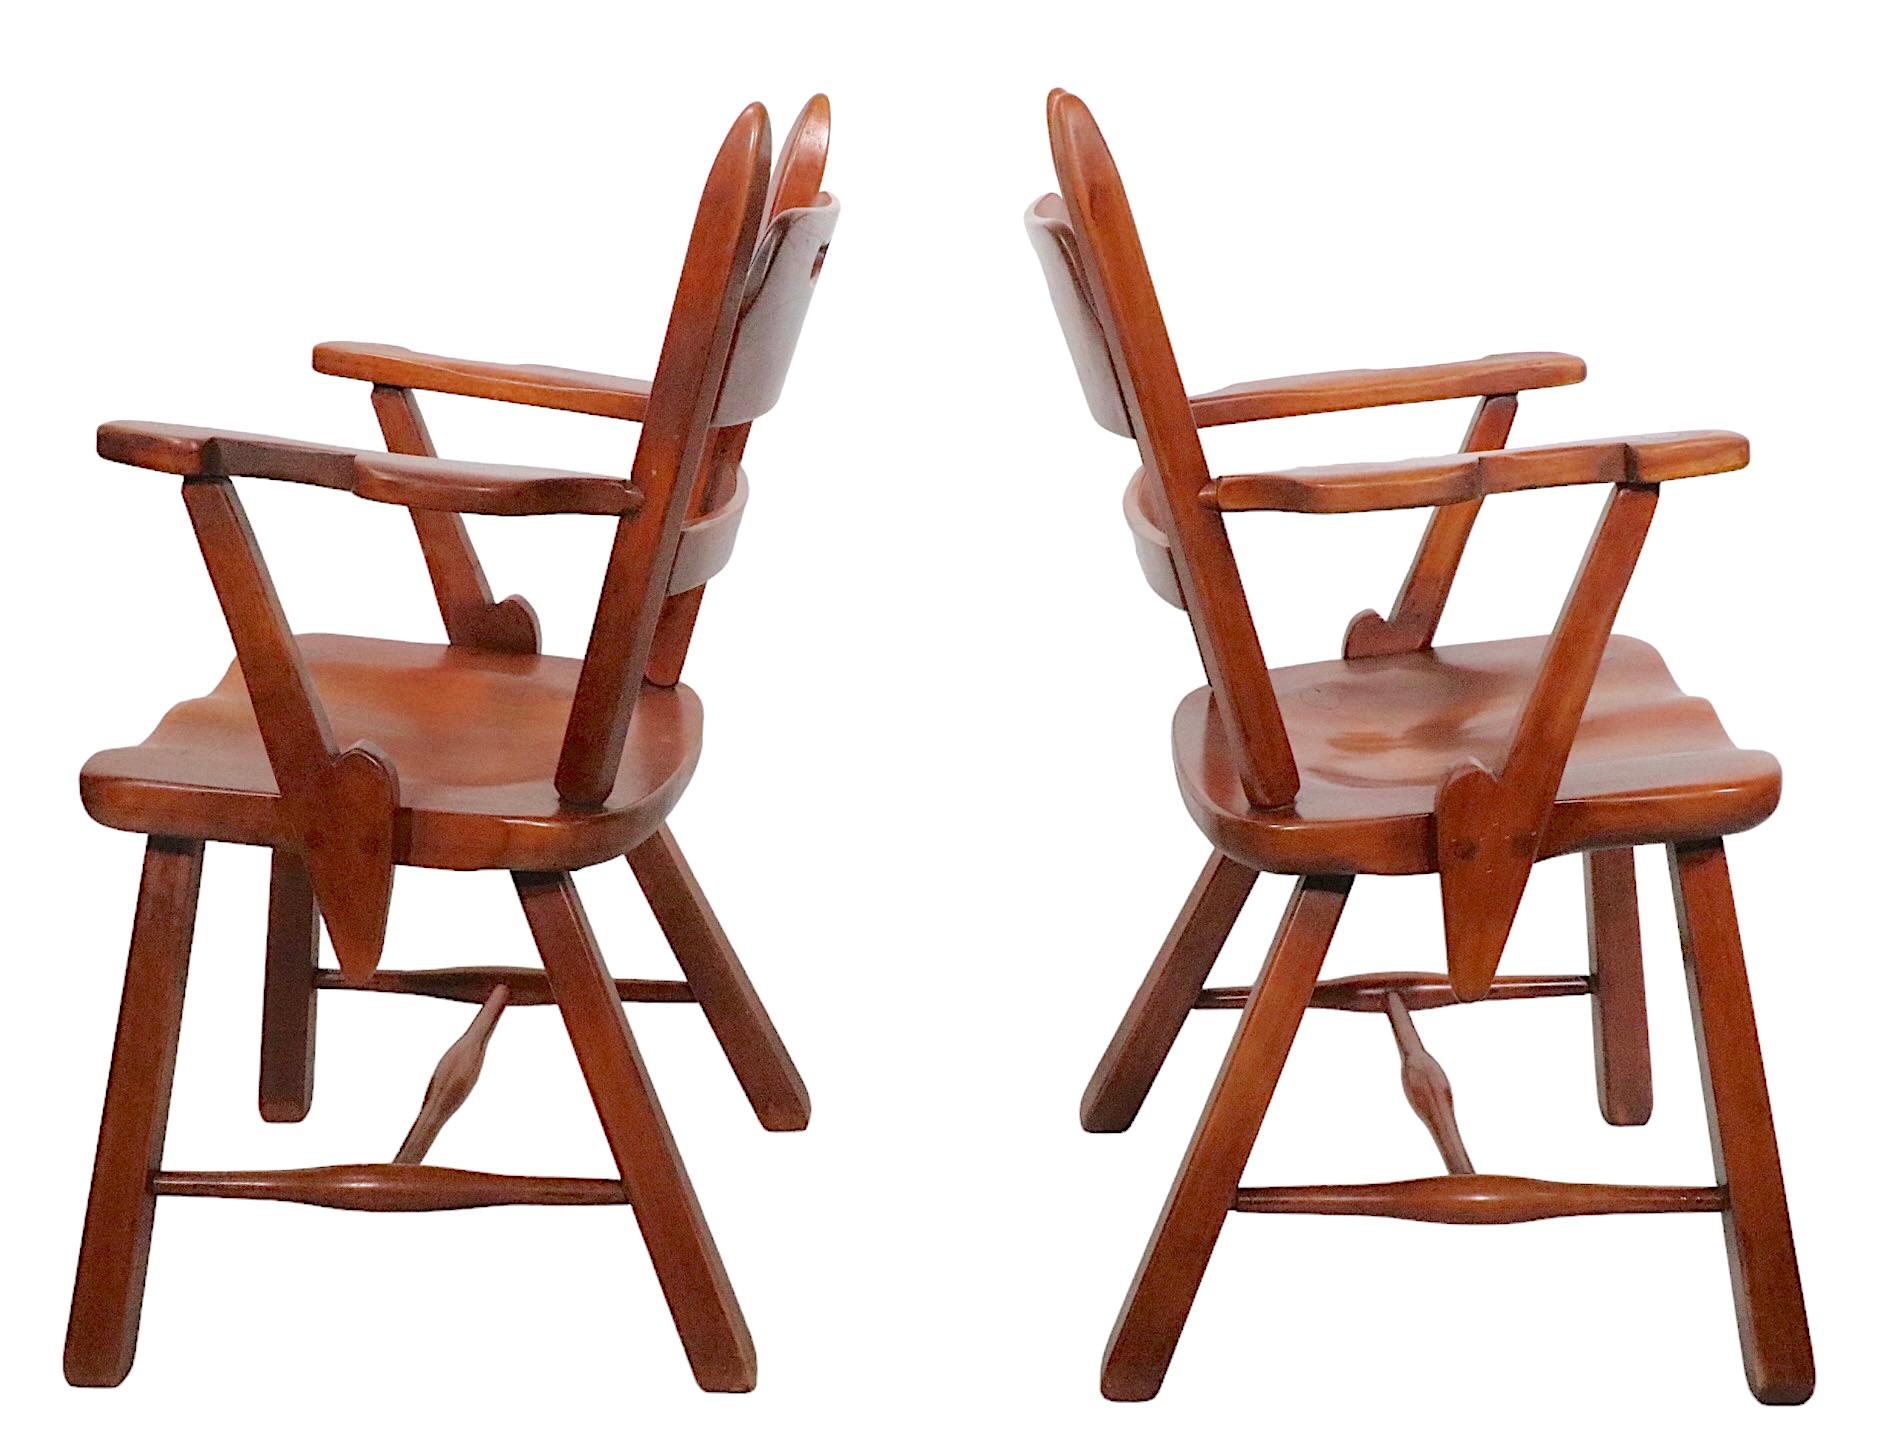  Paire exceptionnelle de  Fauteuils Herman de Vries Coloni Creation modèle 4125A en érable. Cette série illustre  précoce  moderne appliquée  Les fauteuils sont particulièrement réussis. Ils ont été fabriqués par Cushman Manufacturing of Vt. vers